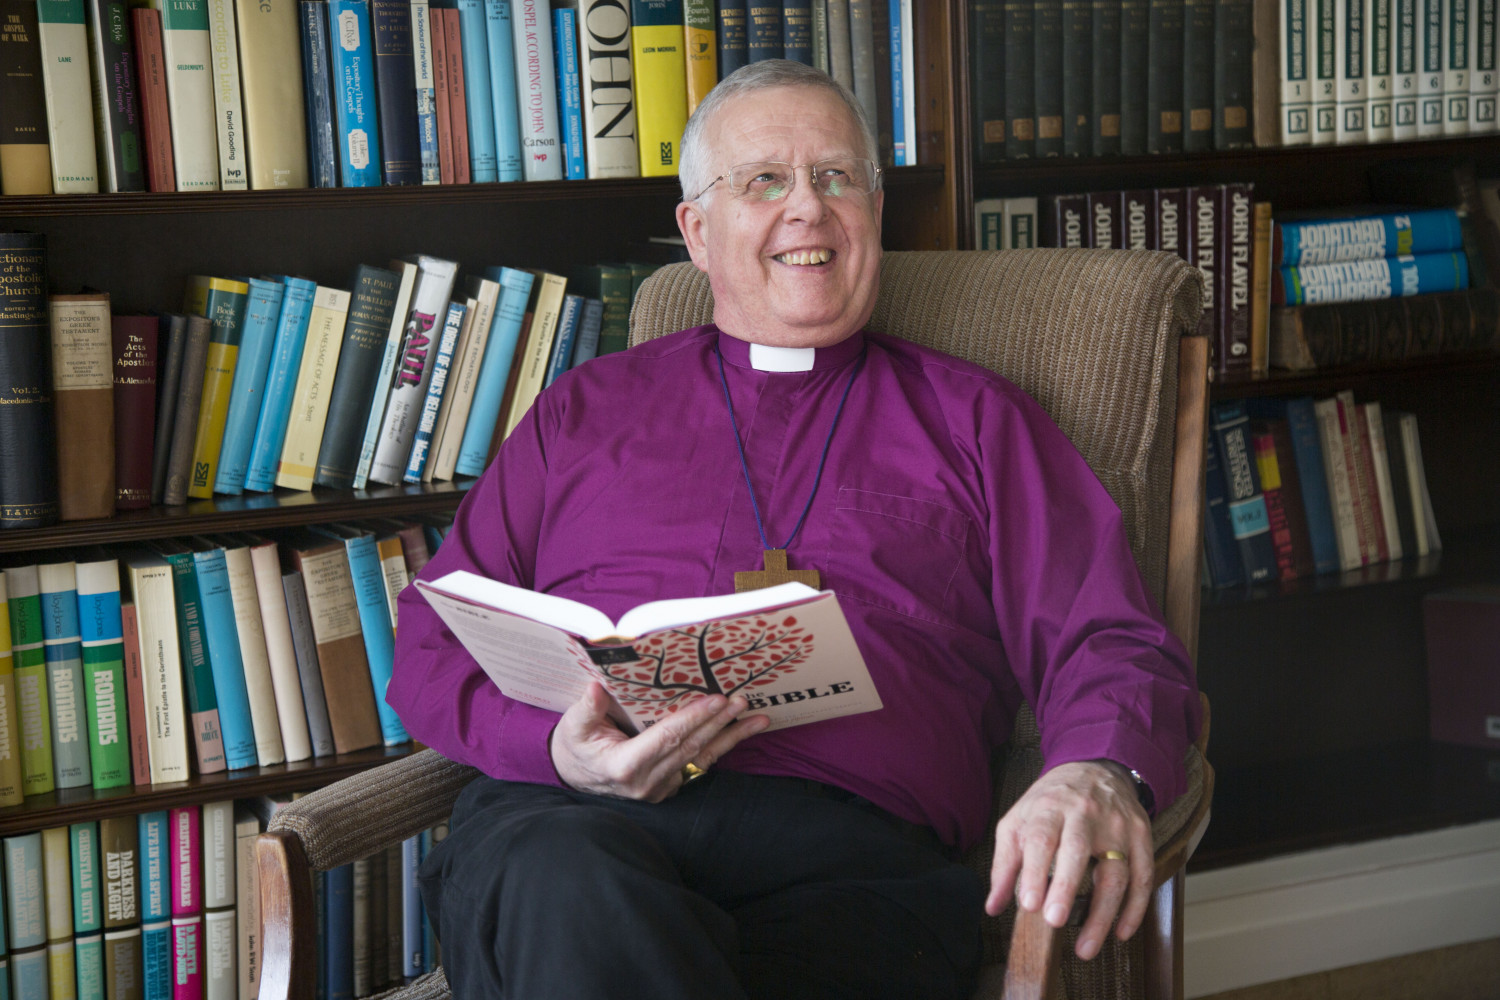 Bishop of Peterborough reading 